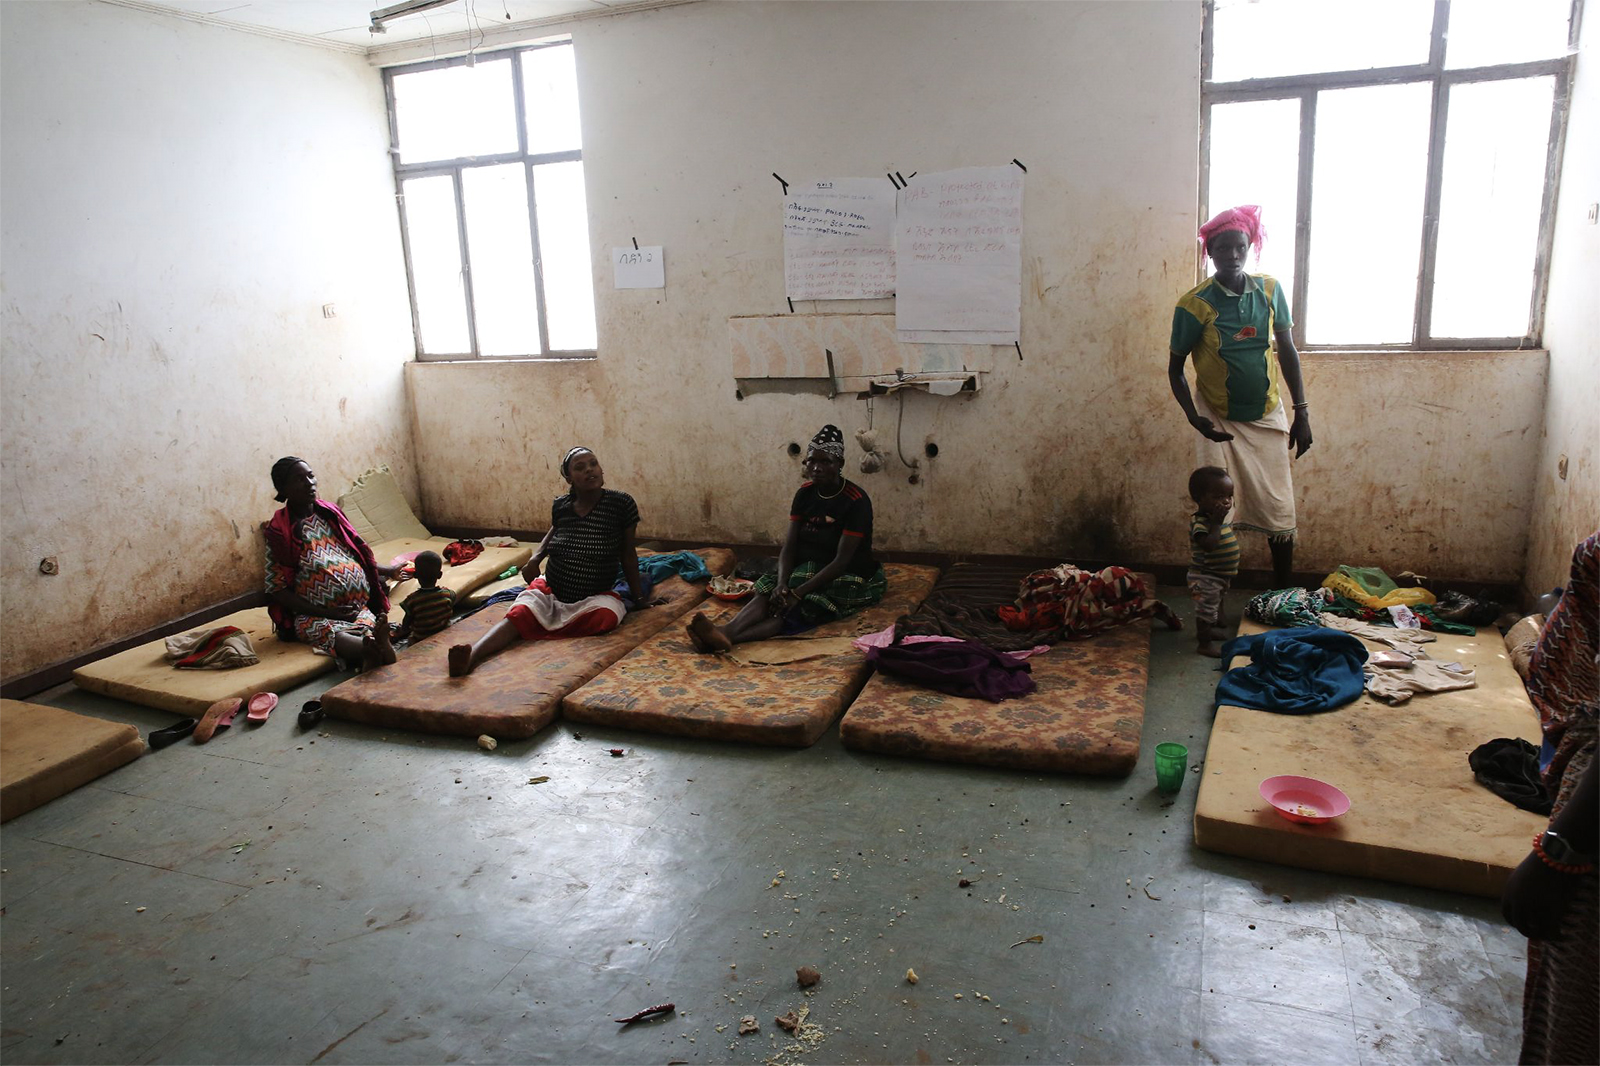 Mulheres grávidas esperam pelo início do trabalho de parto num centro de saúde na Etiópia.  Muitas instalações como esta em países subdesenvolvidos carecem de água potável.  (Foto de Haik Kocharian para Village Health Partnership)